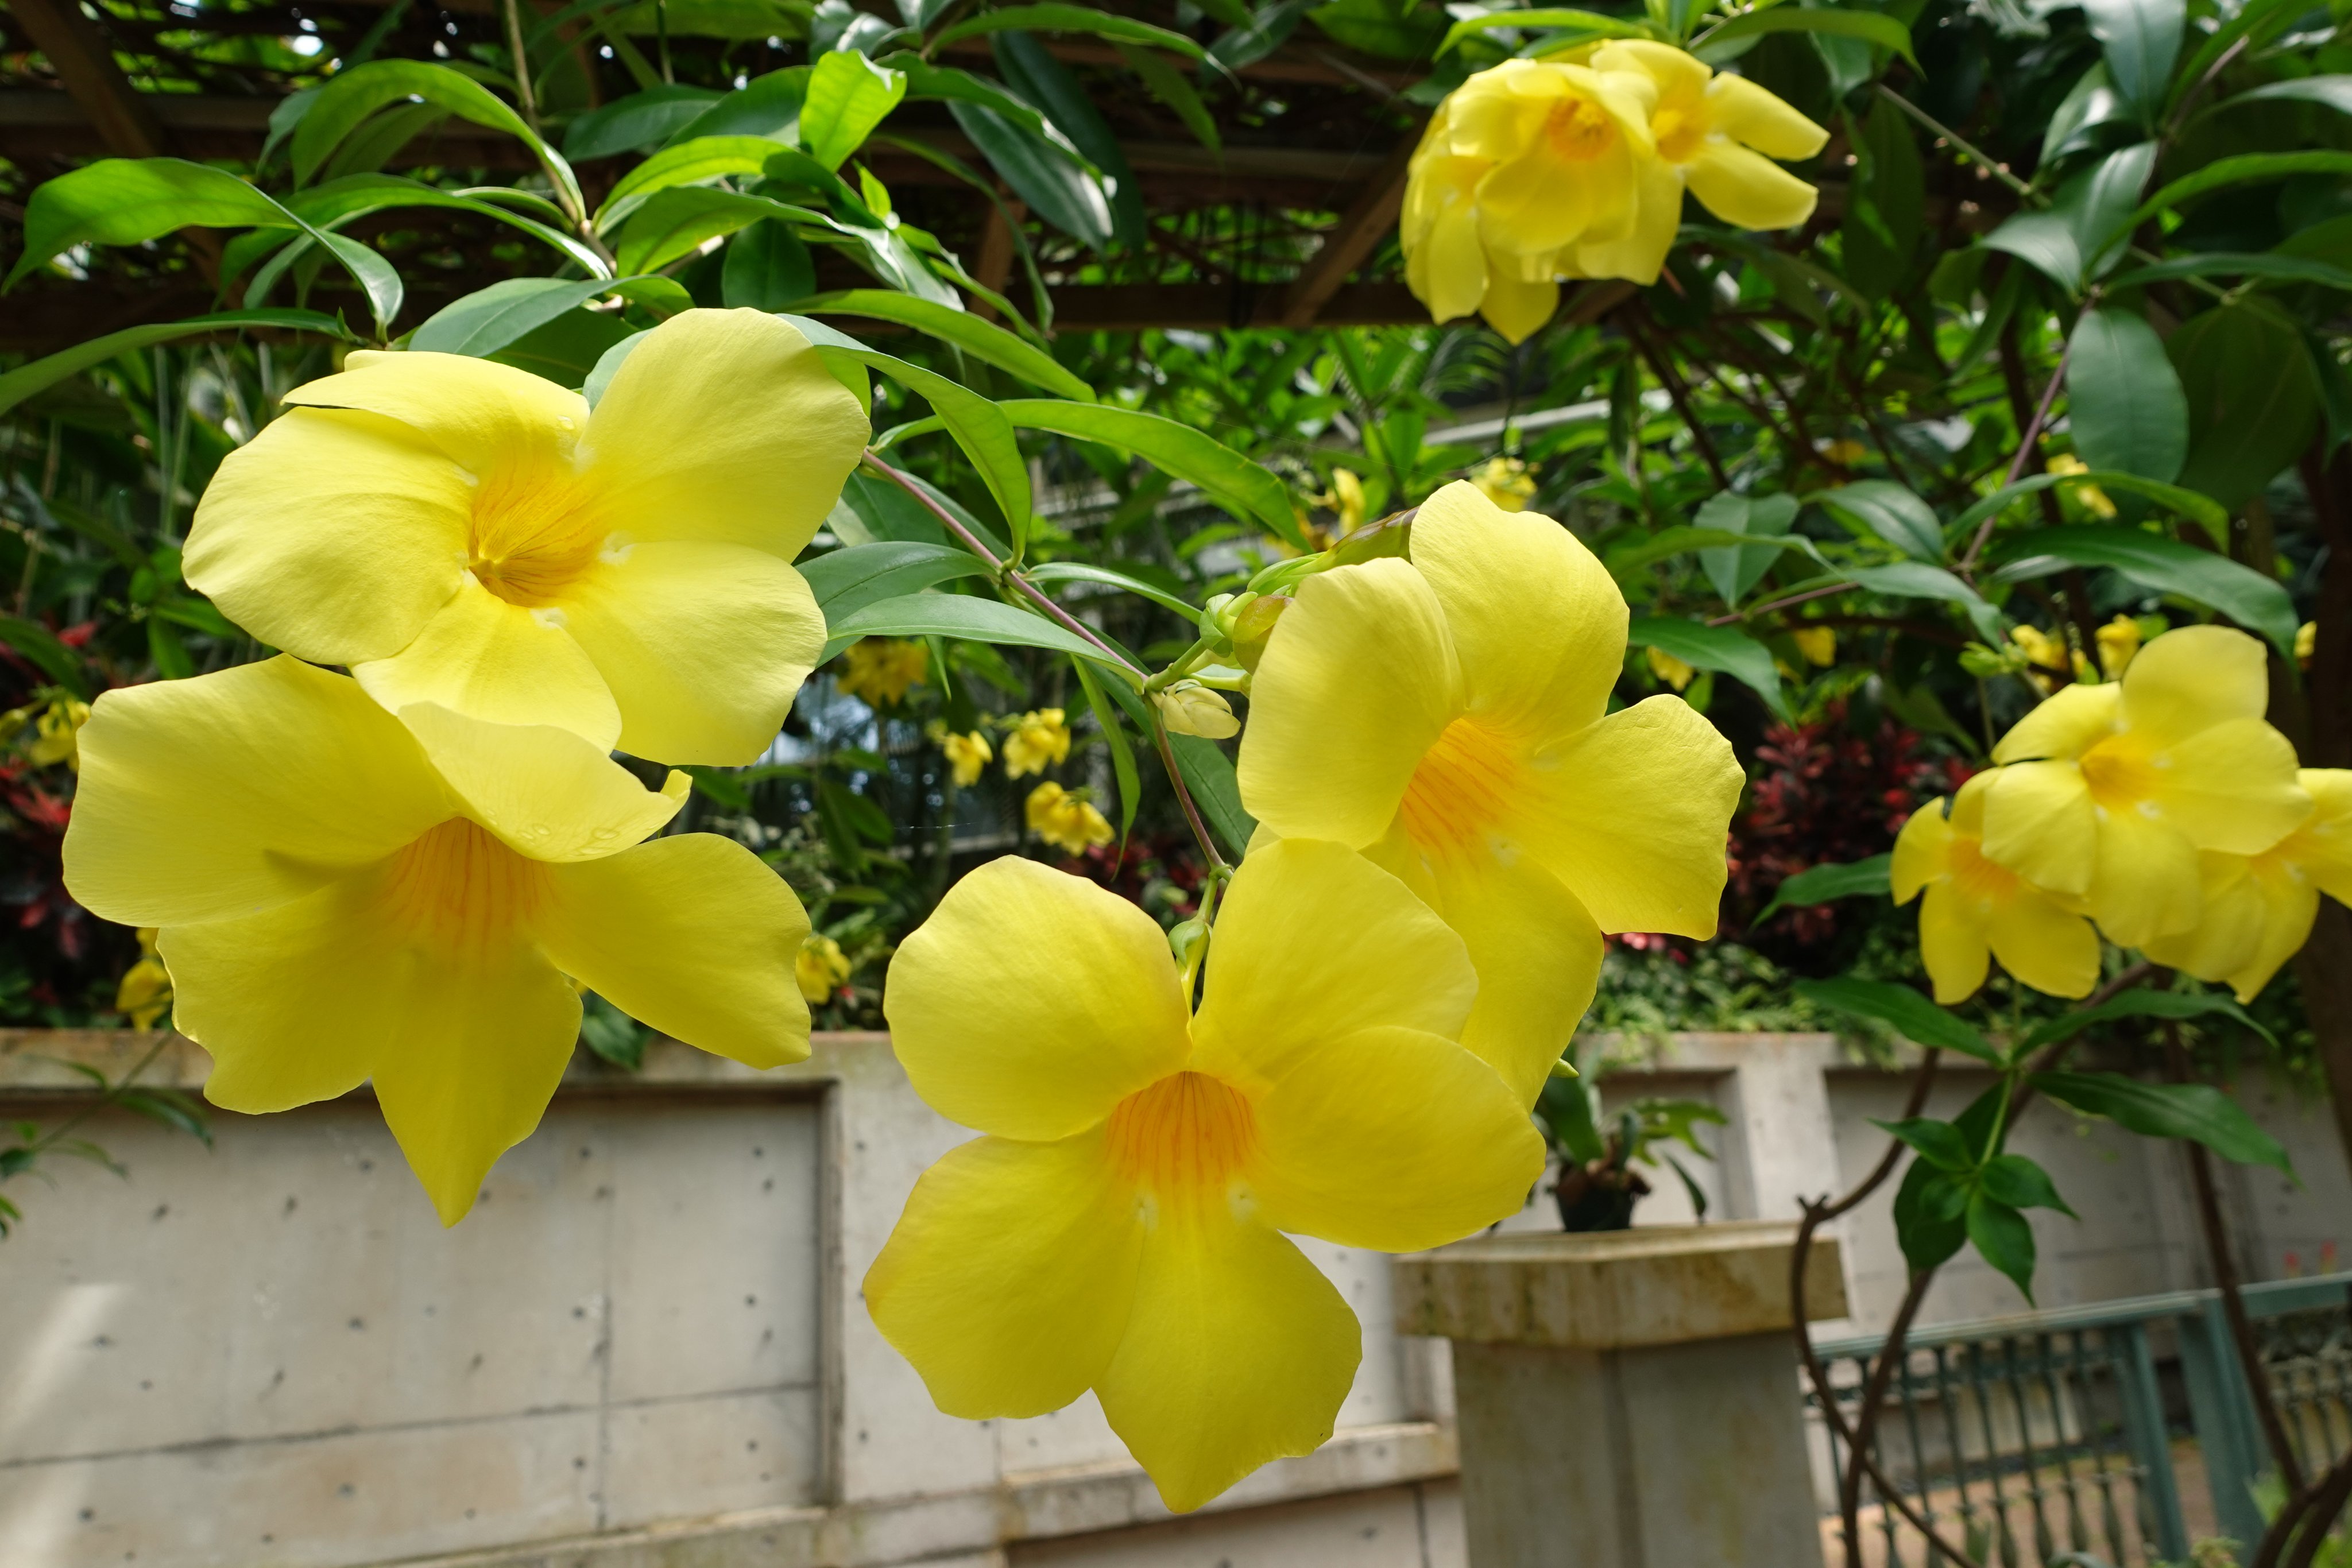 Twitter এ フラワーパークかごしま 温室で鮮やかな黄色の大輪の花を咲かせているオオバナアリアケカズラ 熱帯アメリカ原産のつる植物アラマンダの仲間で大輪の品種です オオバナアリアケカズラ アラマンダ フラワーパークかごしま 指宿 T Co Fwuhzotmsk